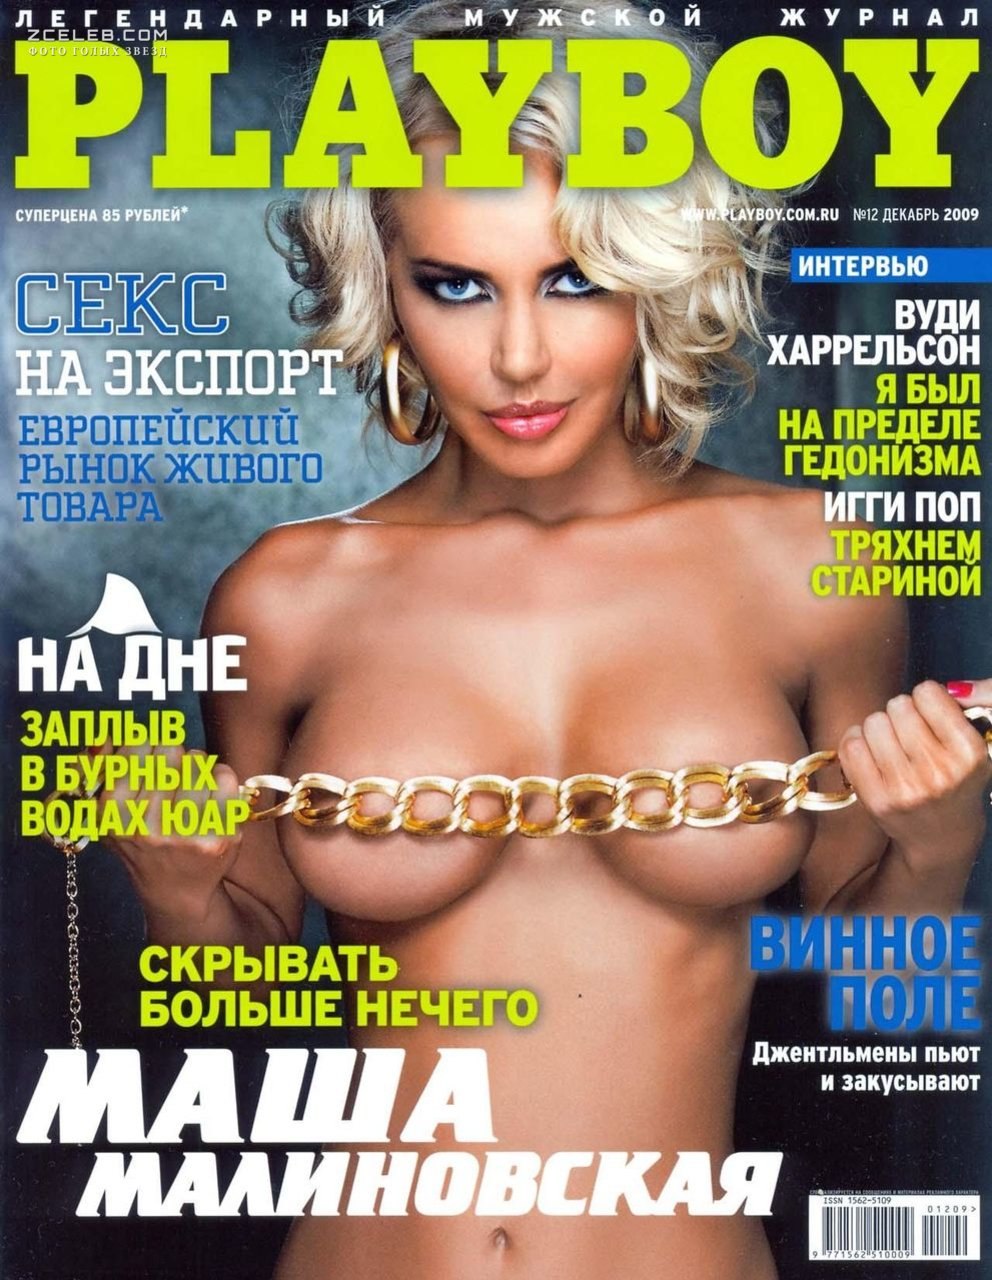 Журналы с голыми женщинами (54 фото) - Порно фото голых девушек